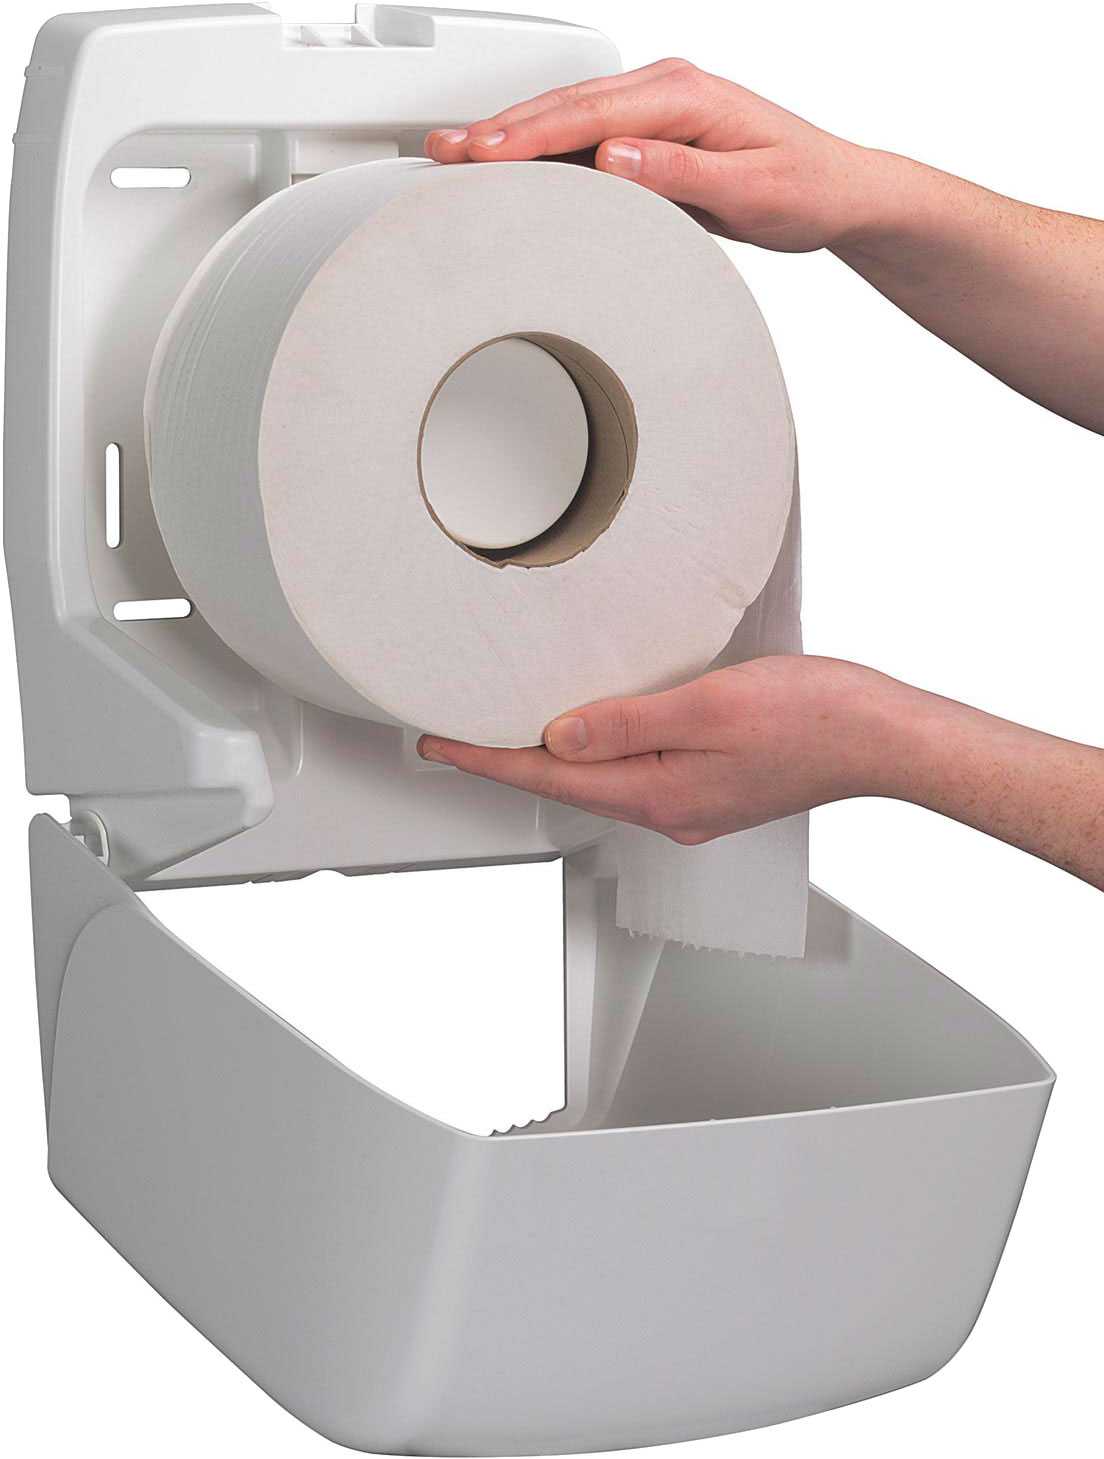 Как выбирать диспенсеры для туалетной бумаги?